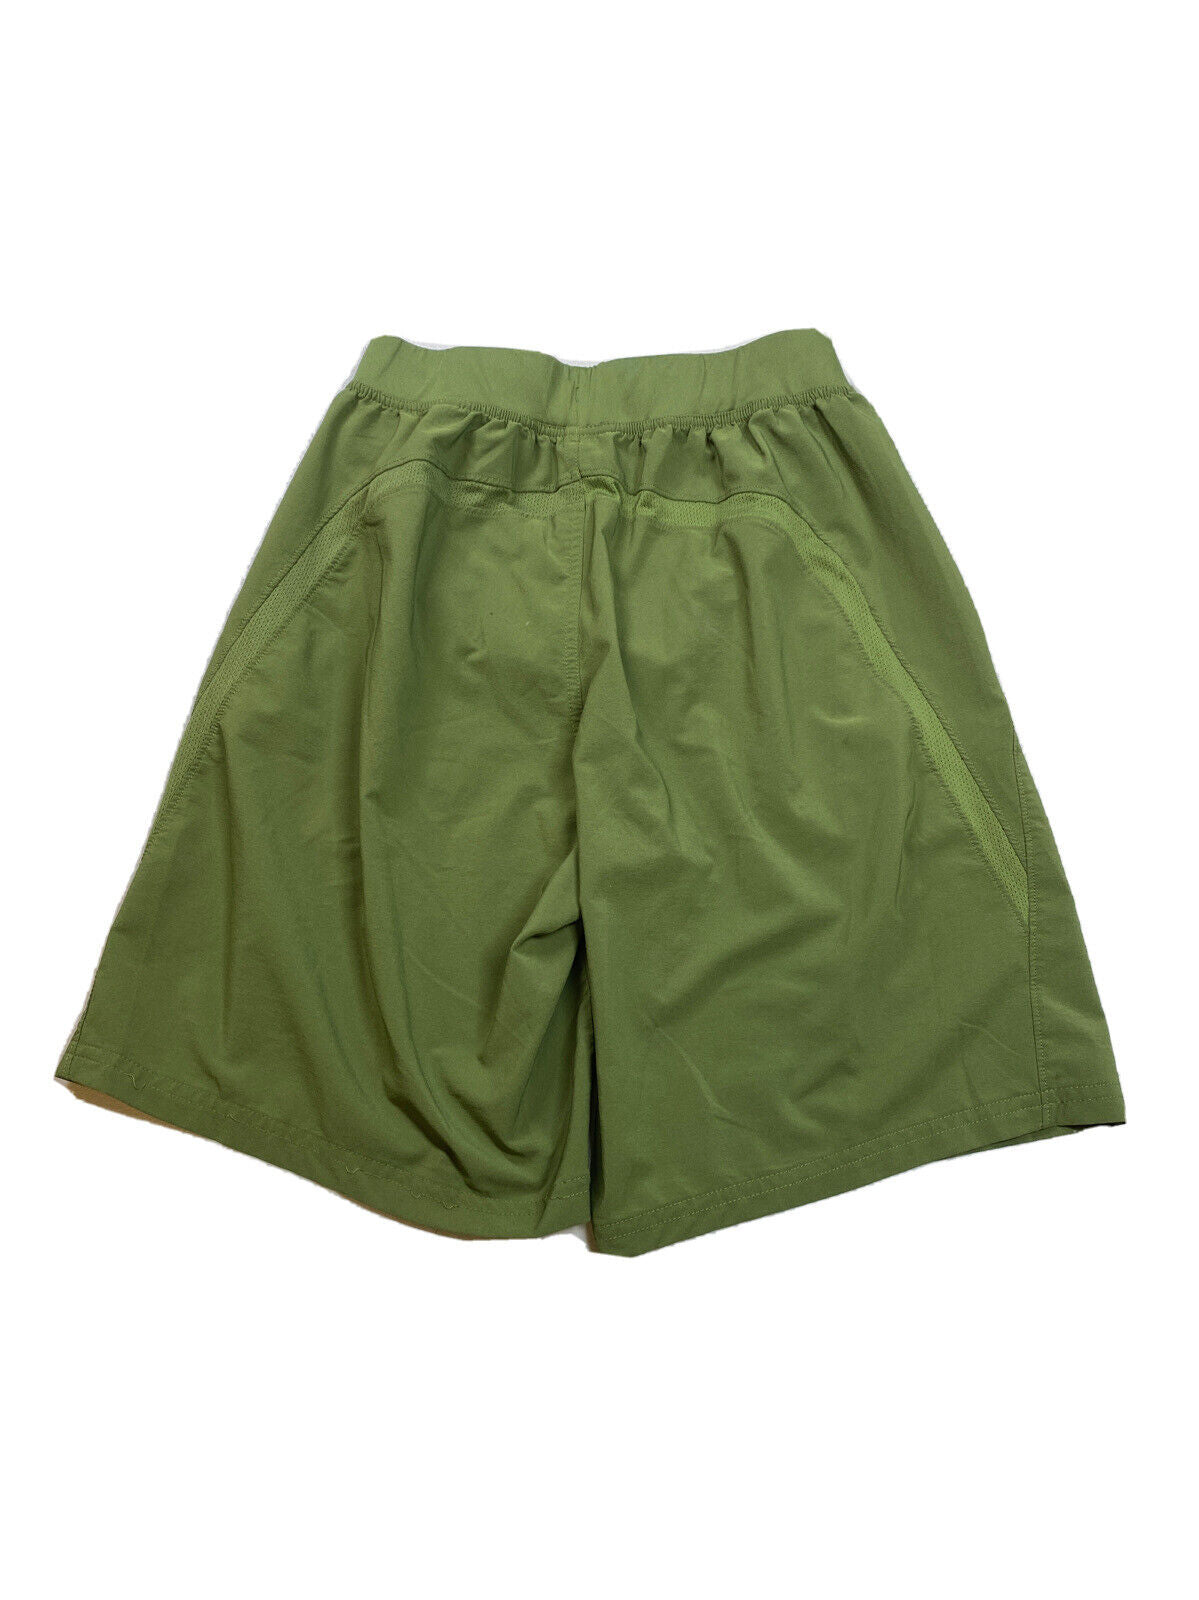 Under Armour Pantalones cortos deportivos HeatGear ajustados con forro verde para hombre - S